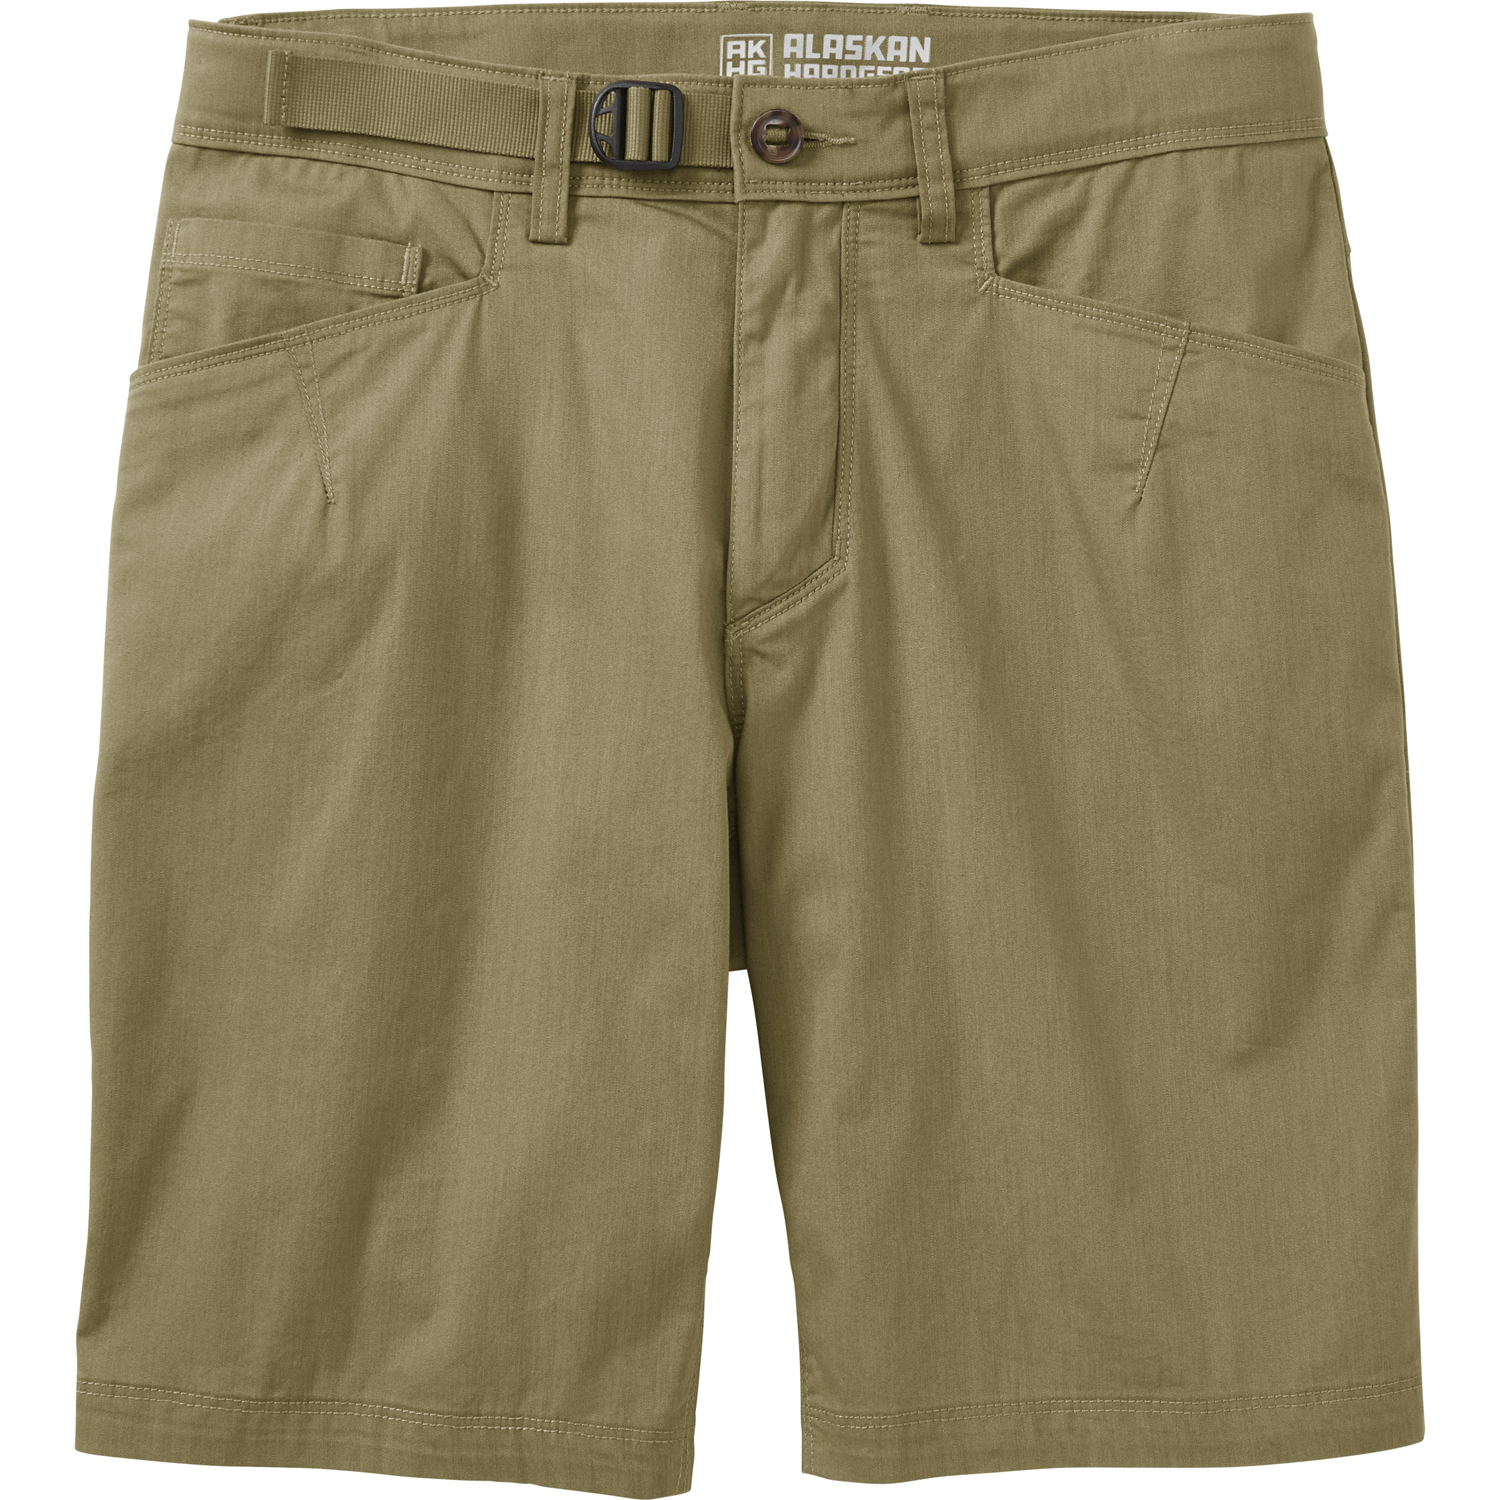 Men's AKHG Free Rein 10" Shorts